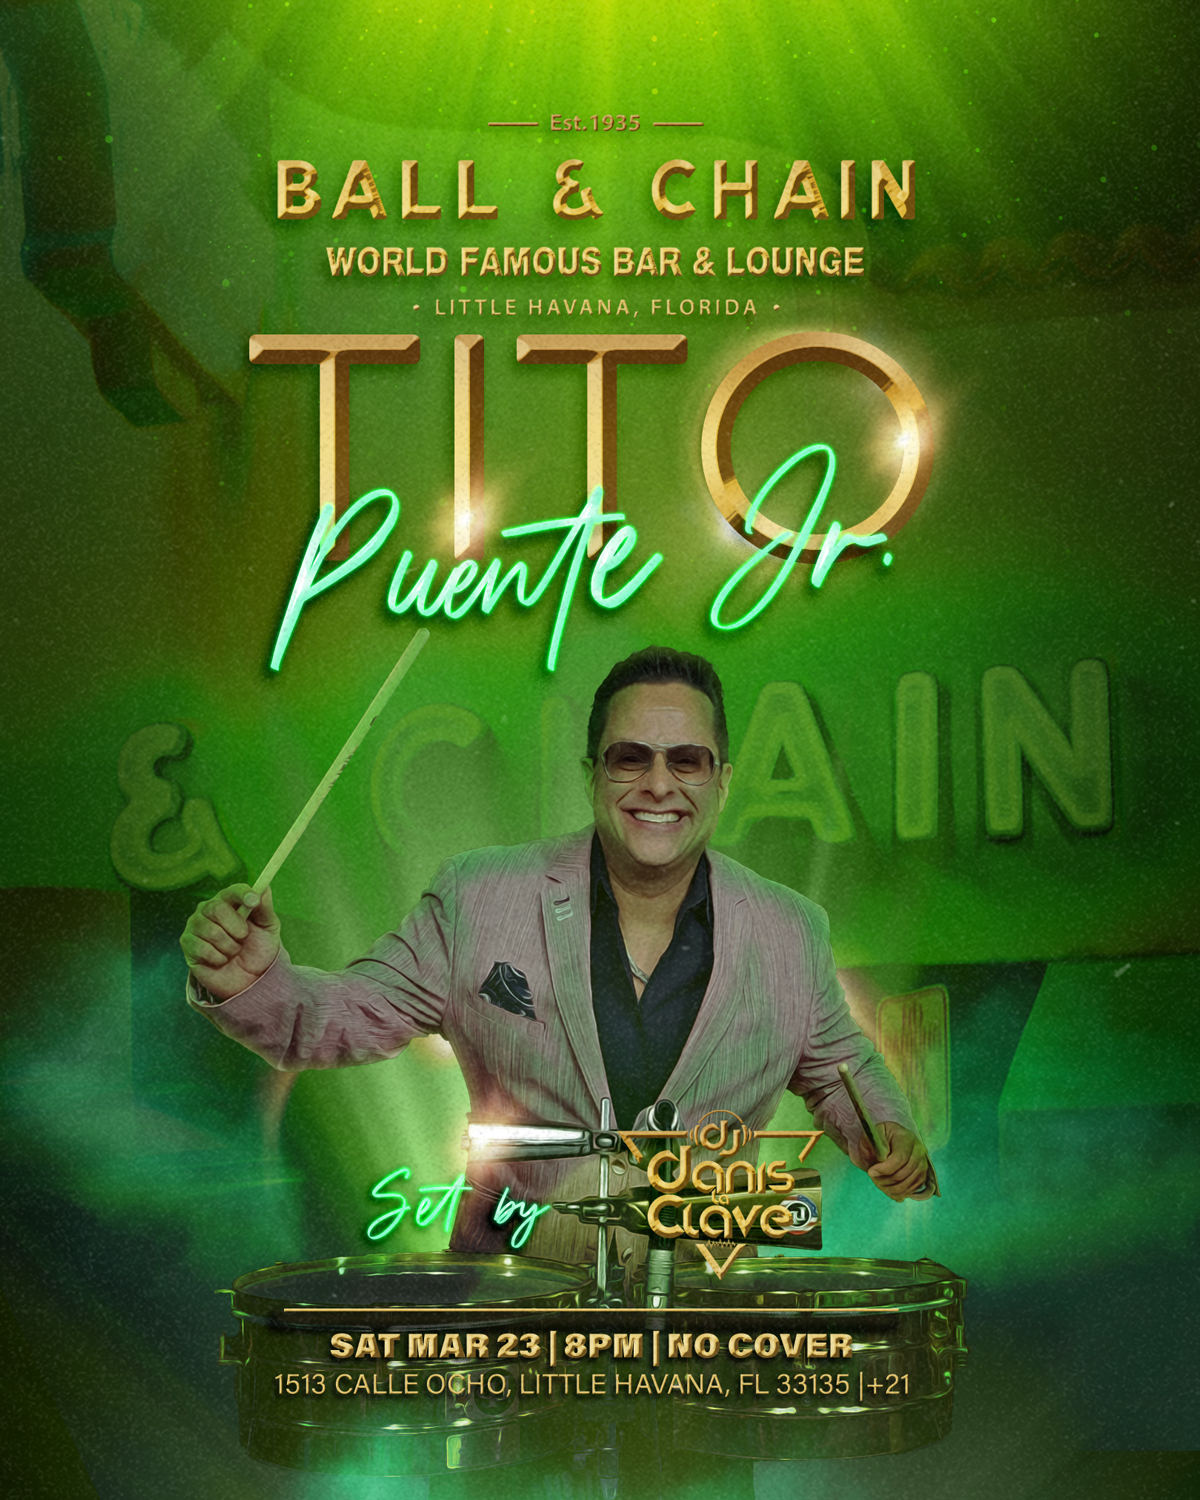 Tito Puente Jr Live at Ball & Chain Miami